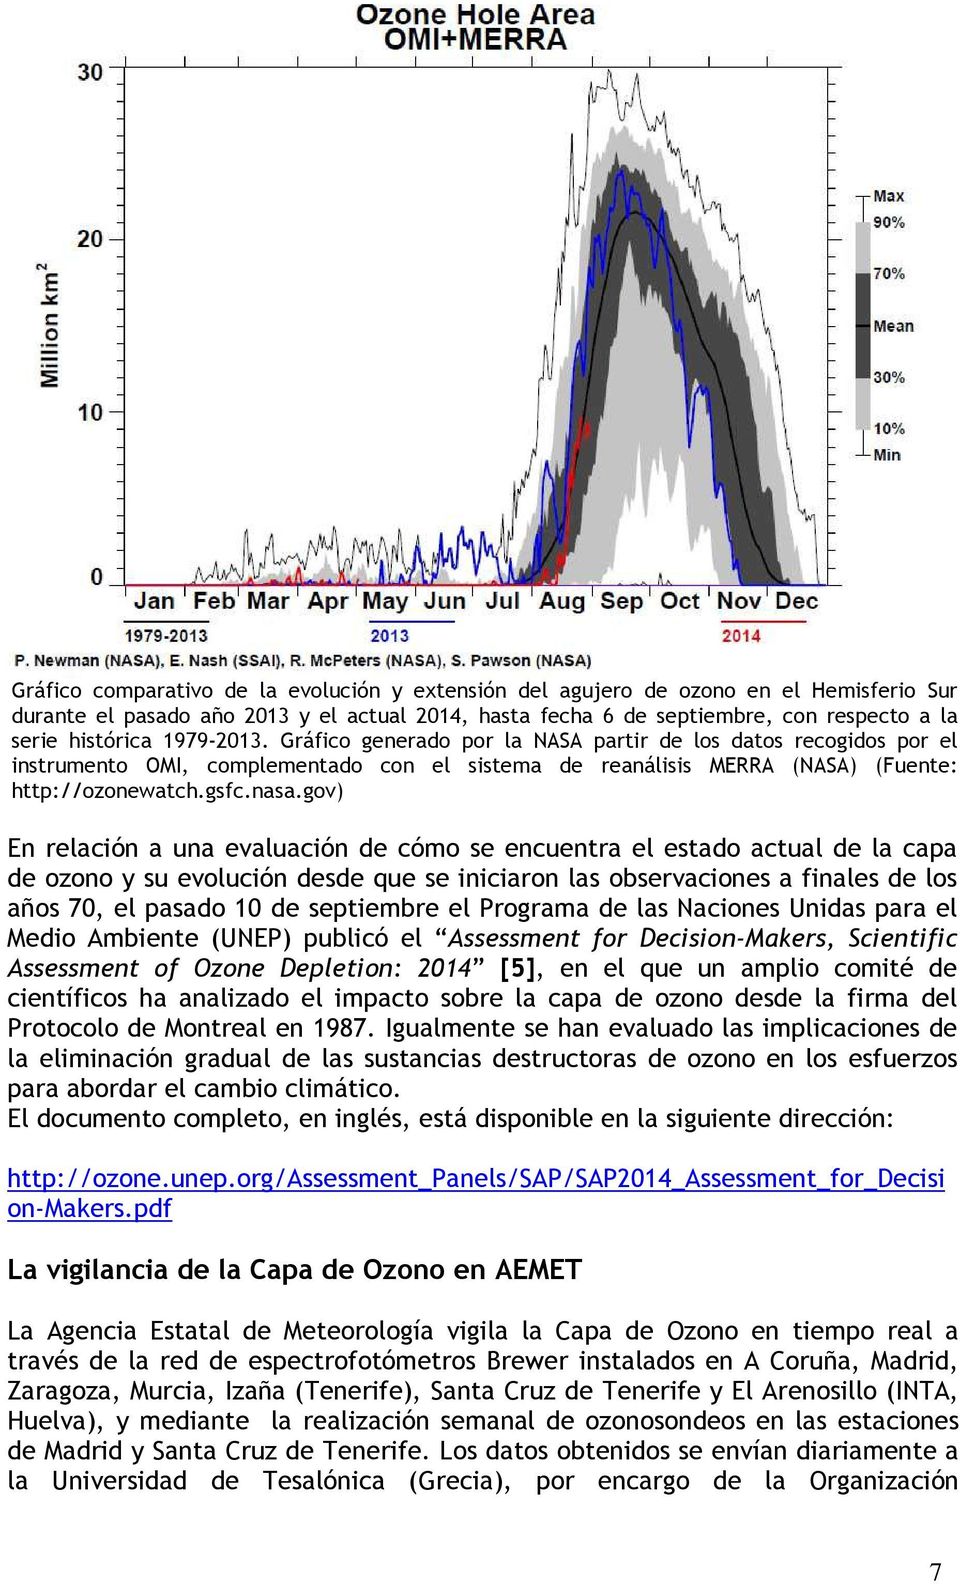 gov) En relación a una evaluación de cómo se encuentra el estado actual de la capa de ozono y su evolución desde que se iniciaron las observaciones a finales de los años 70, el pasado 10 de